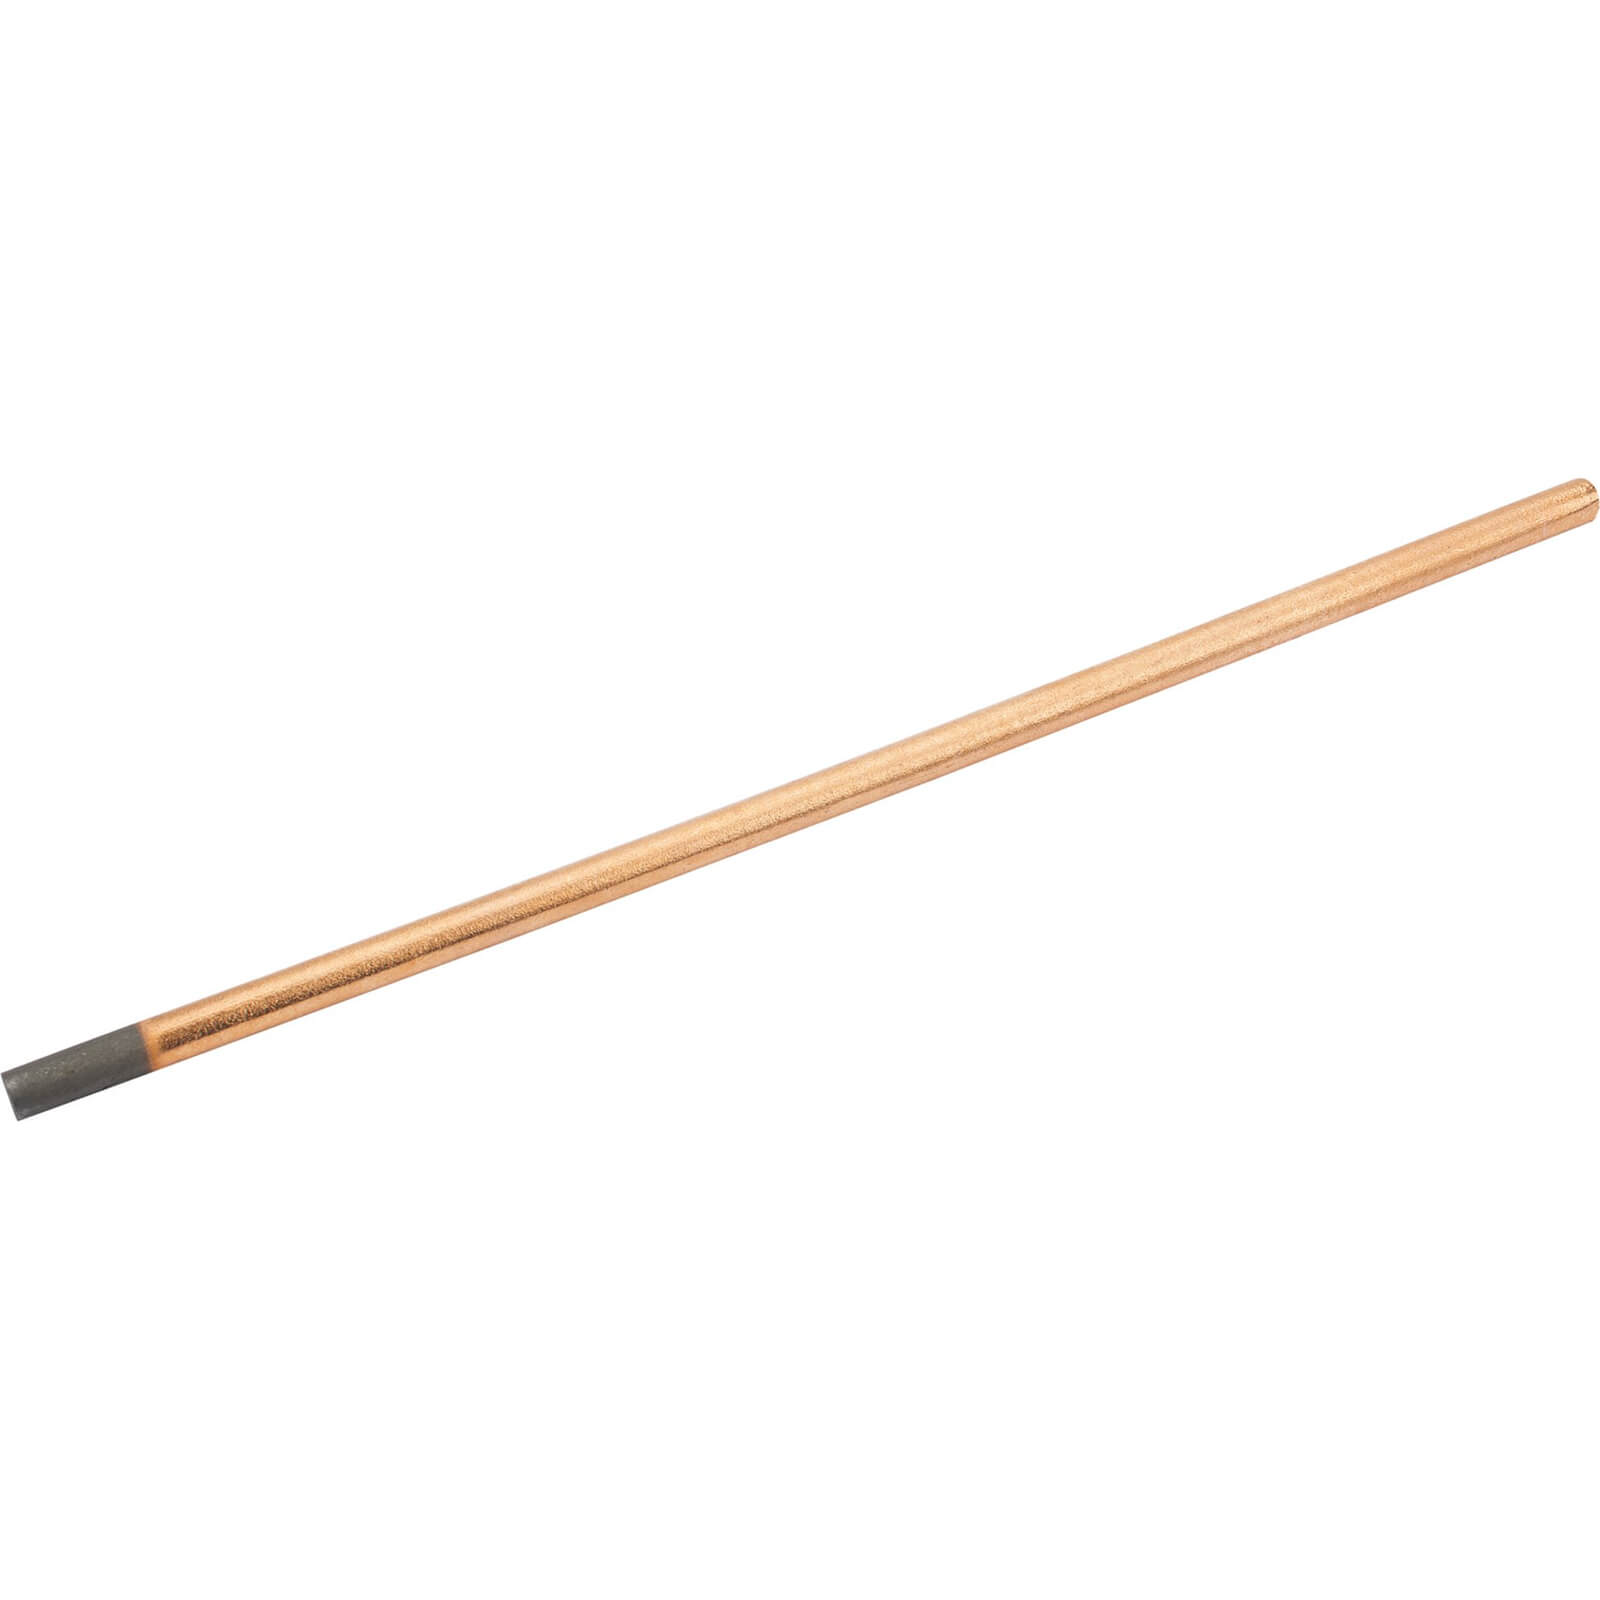 Image of Draper Carbon Rod for 71106 Stud Welder